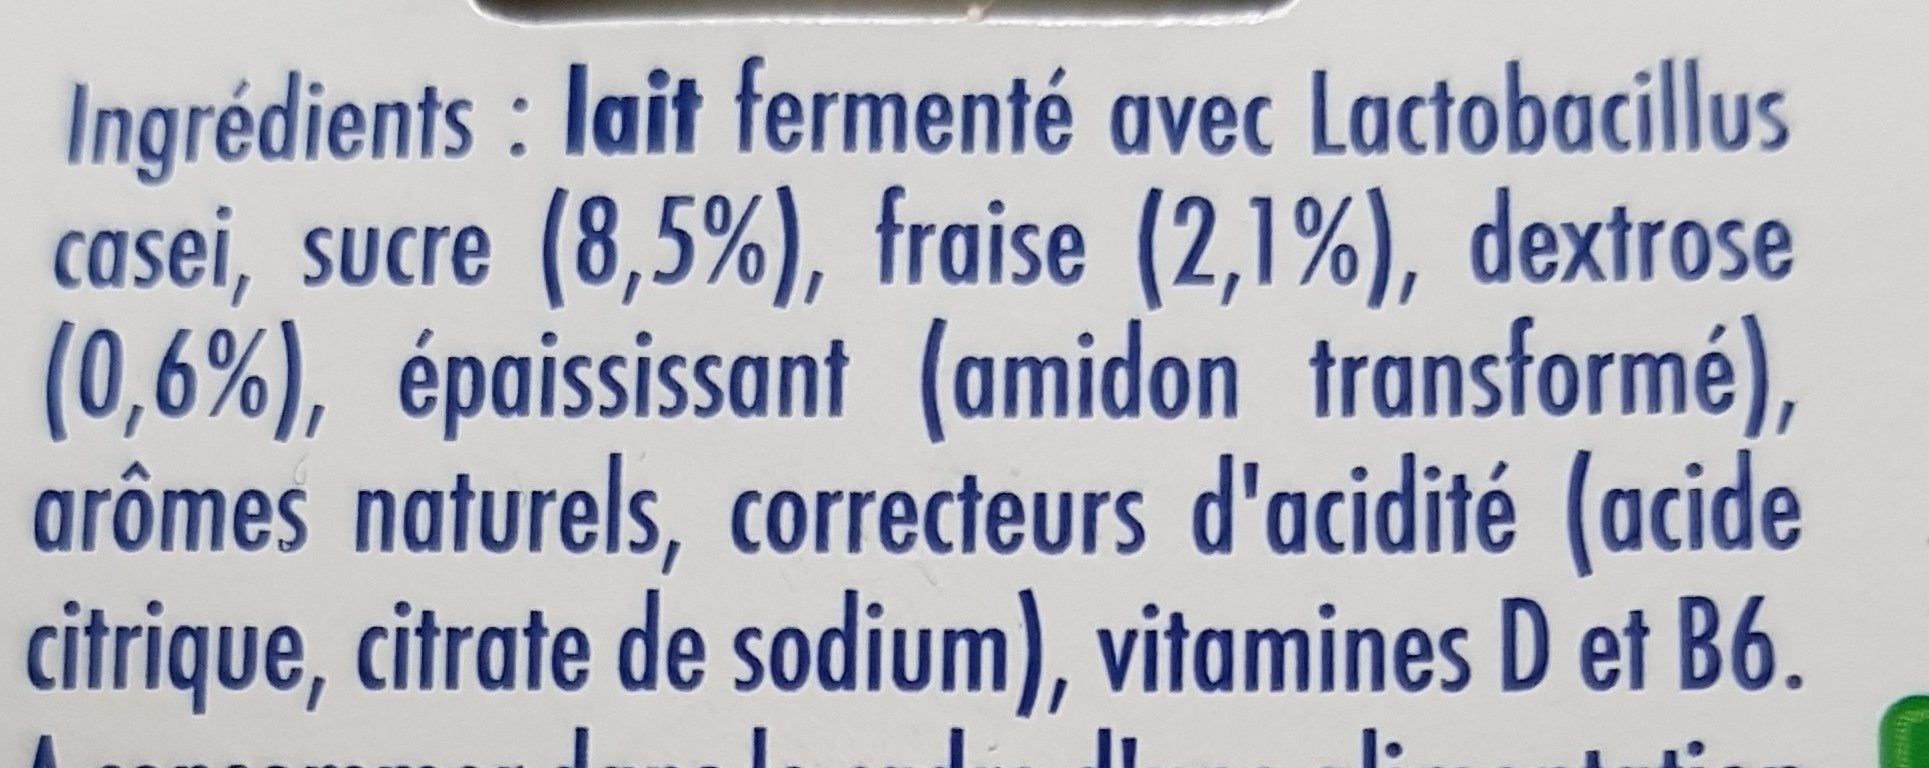 Actimel Gout Fraise - Ingredients - fr